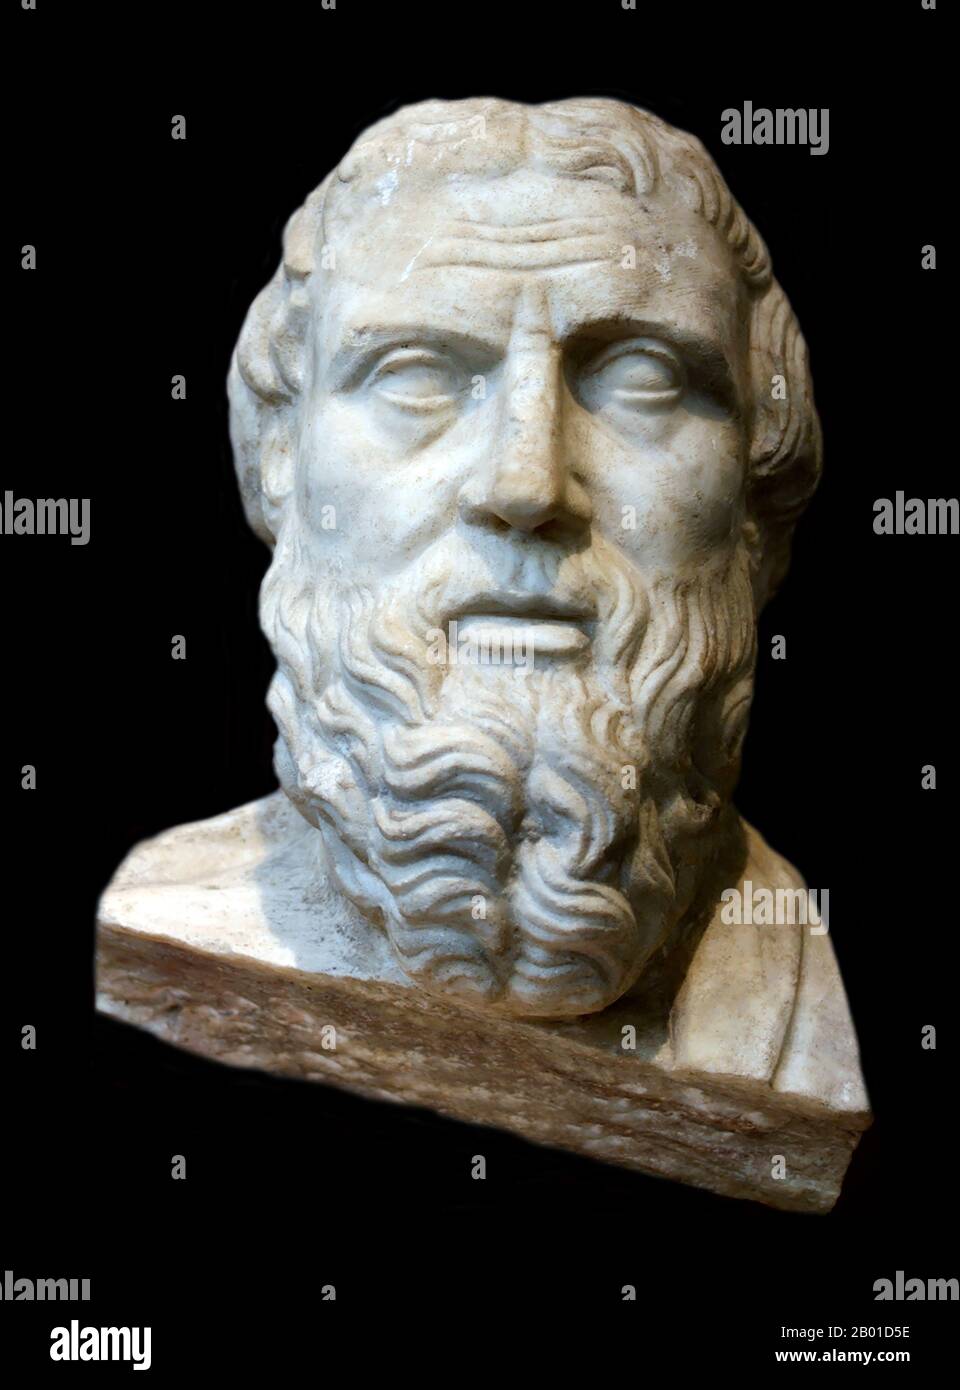 Griechenland/Türkei: Herodot, der 'Vater der Geschichte' (c. 484 - c. 425 BCE). Römische Kopie einer griechischen Marmorbüste, Anfang des 4.. Jahrhunderts v. Chr. Herodot (griechisch: Hēródotos) war ein griechischer Historiker, der in Halicarnassus, Caria (heute Bodrum, Türkei) geboren wurde und im 5.. Jahrhundert v. Chr. lebte. Er wird als „Vater der Geschichte“ bezeichnet, da er der erste Historiker war, der seine Materialien systematisch sammelte, deren Genauigkeit bis zu einem gewissen Grad testet und sie in einer gut konstruierten und lebendigen Erzählung anordnet. Stockfoto